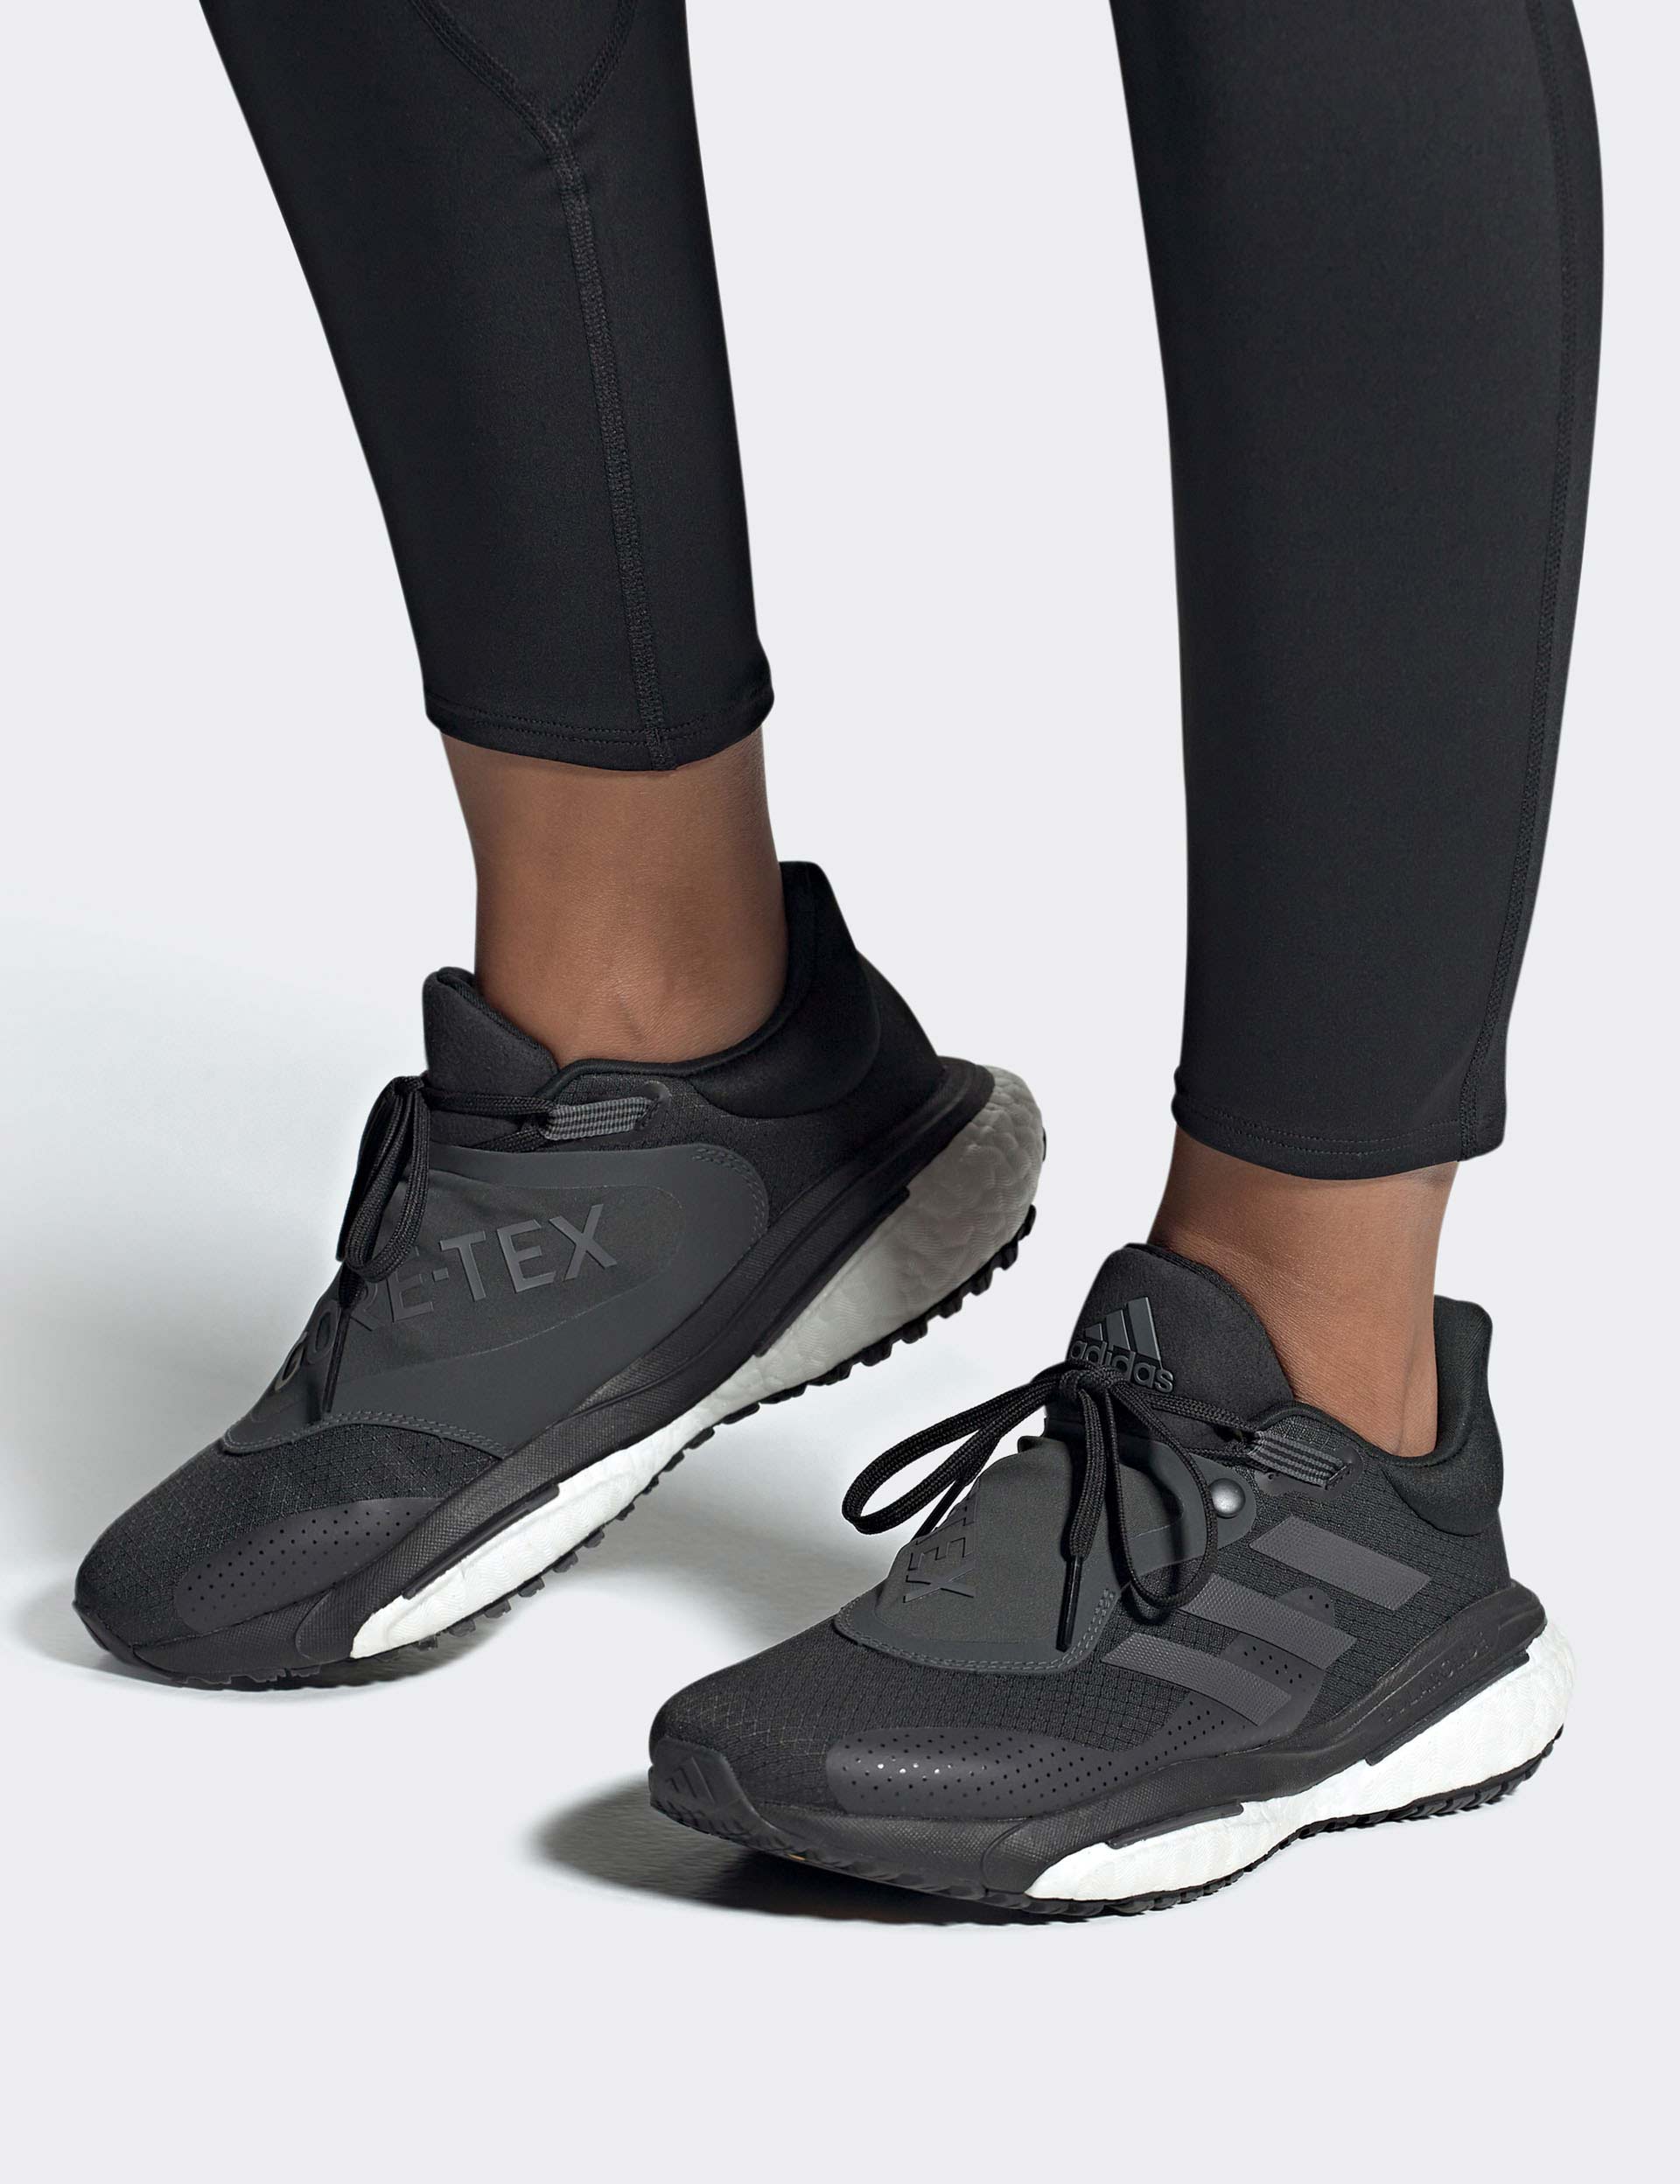 adidas by Stella McCartney Solarglide Running Shoes - Black | adidas Canada